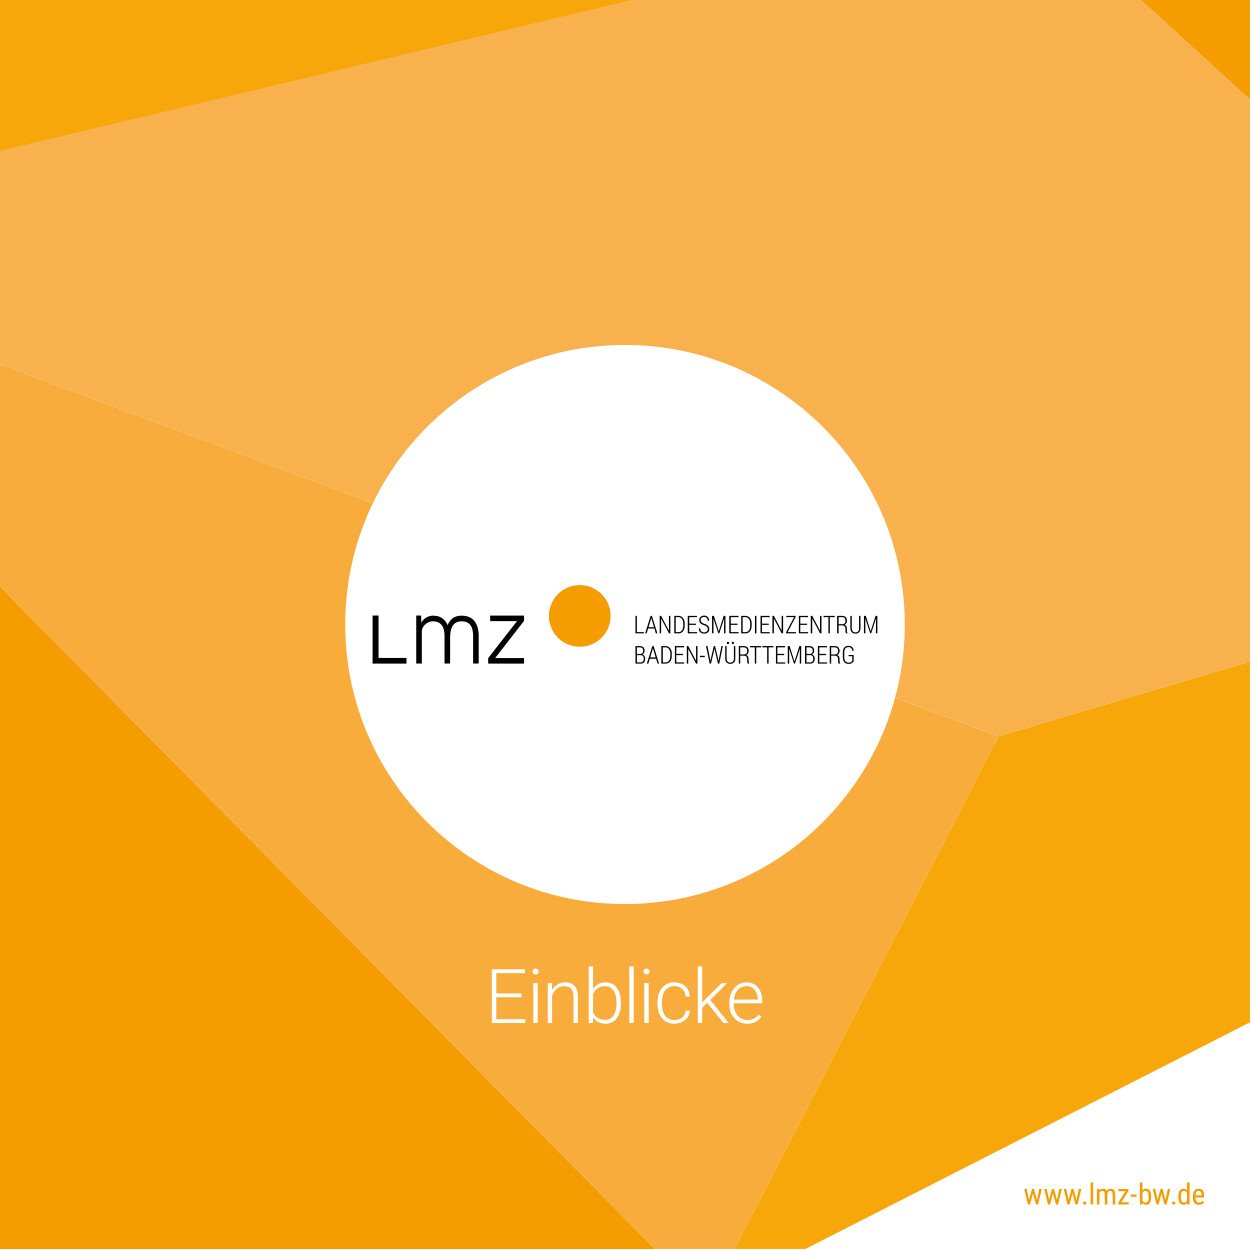 Titelseite der Imagebroschüre des LMZ